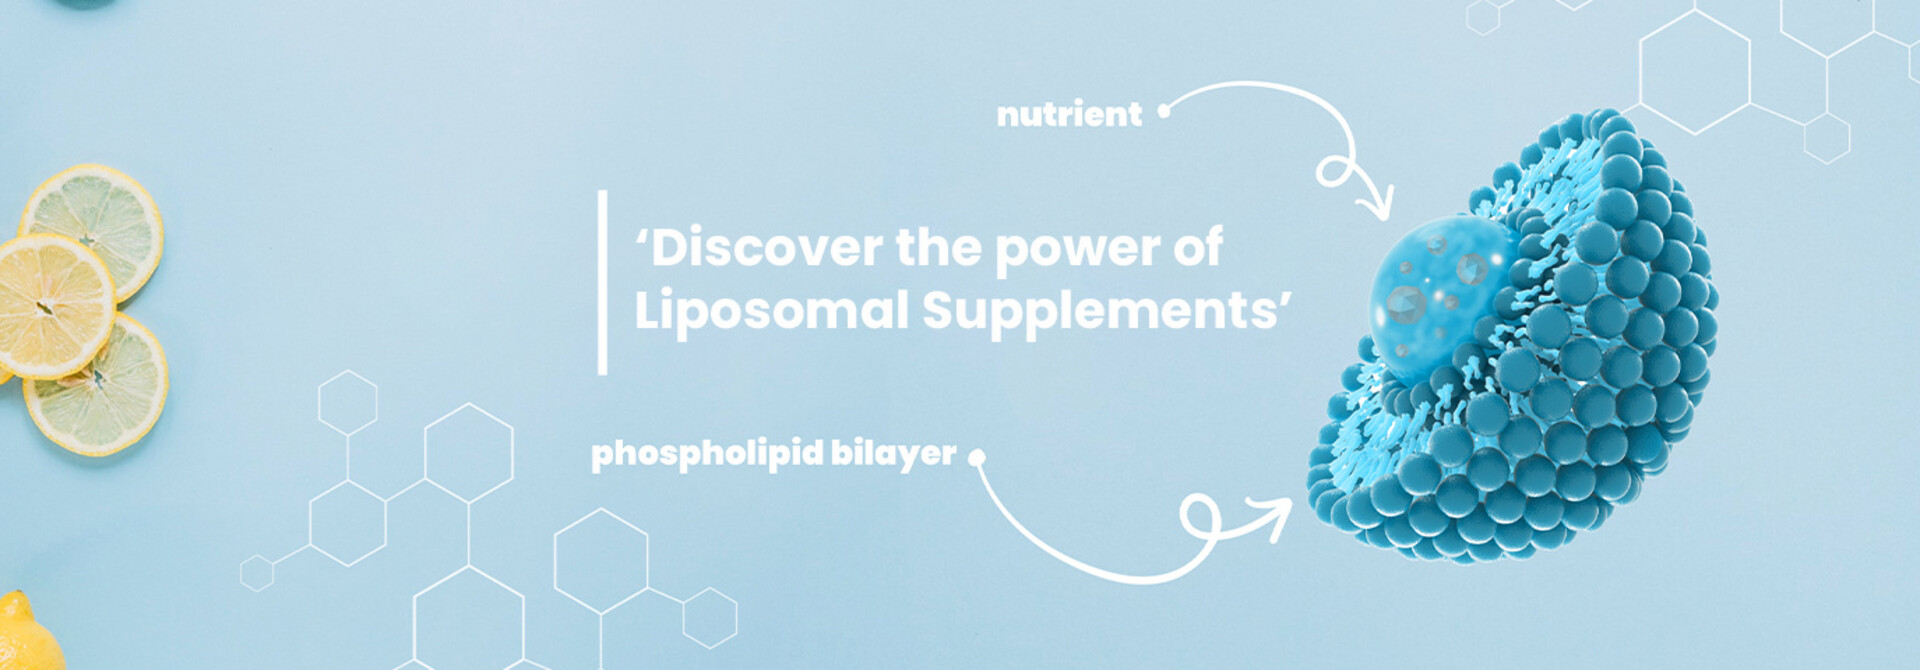 Entdecke die Kraft von liposomalen Nahrungsergänzungsmitteln: Was sind sie und warum sind sie besser?